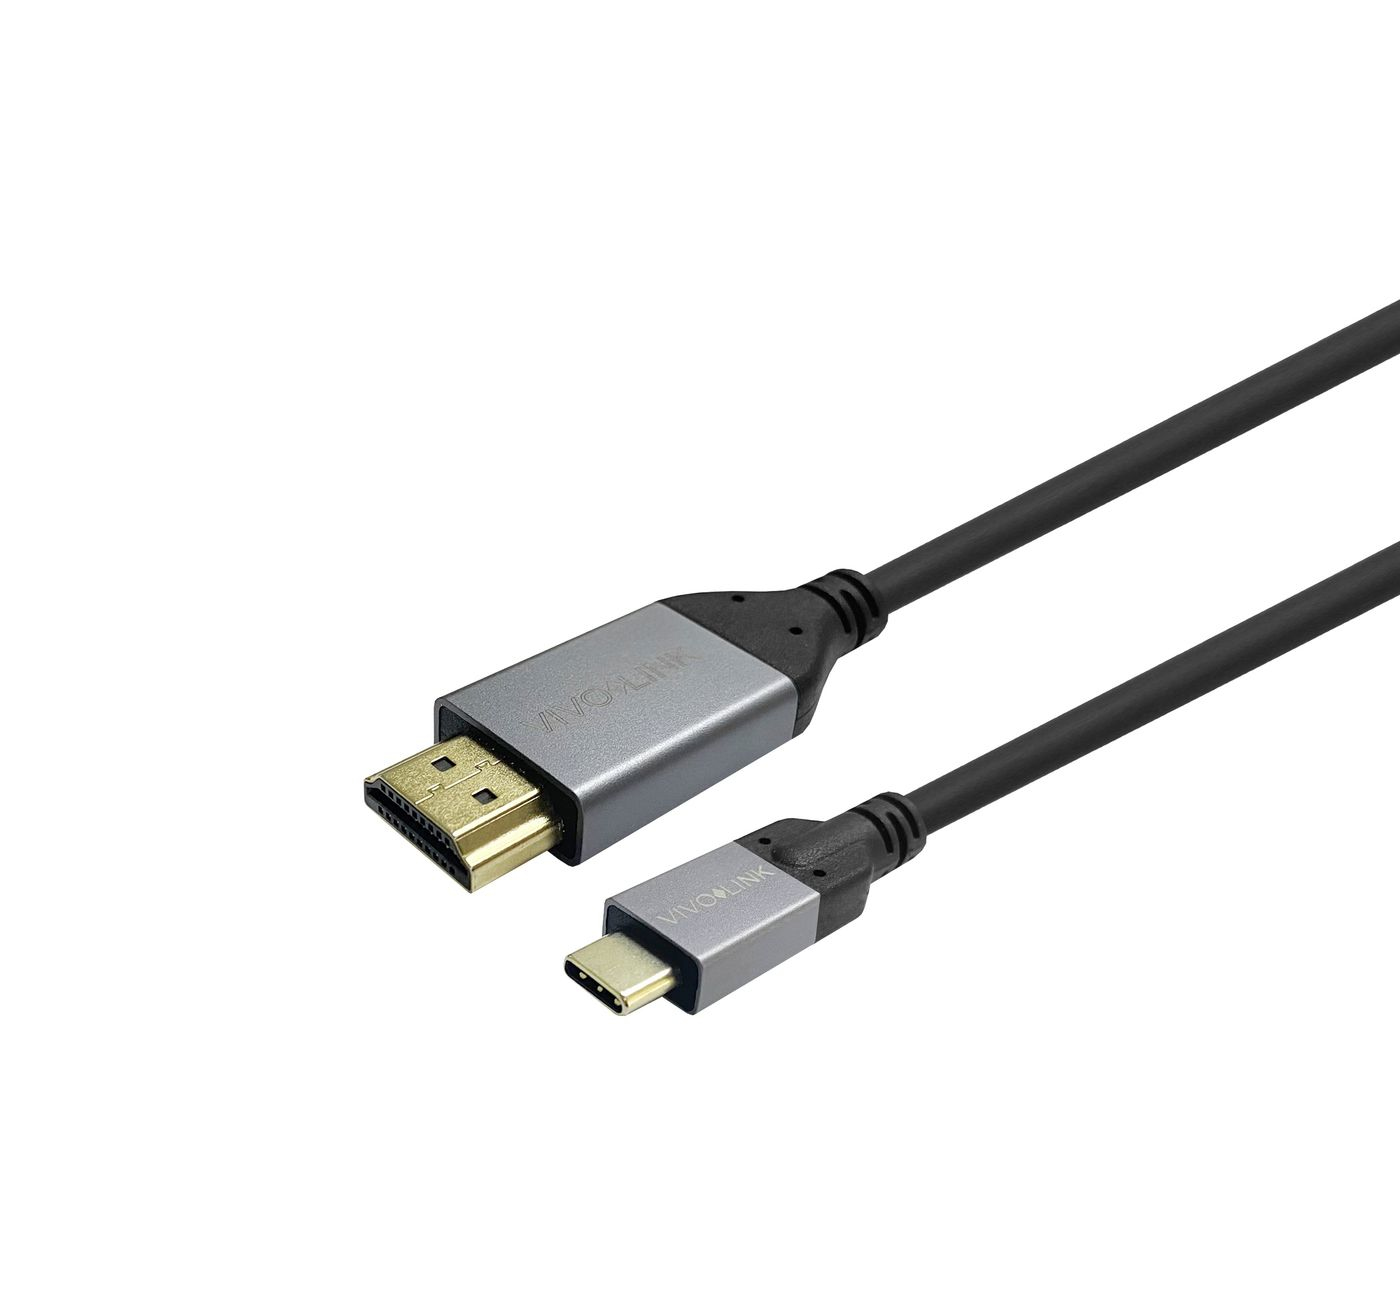 Photos - Cable (video, audio, USB) Vivolink PROUSBCHDMIMM5 USB cable 5 m USB 3.2 Gen 1  USB C (3.1 Gen 1)